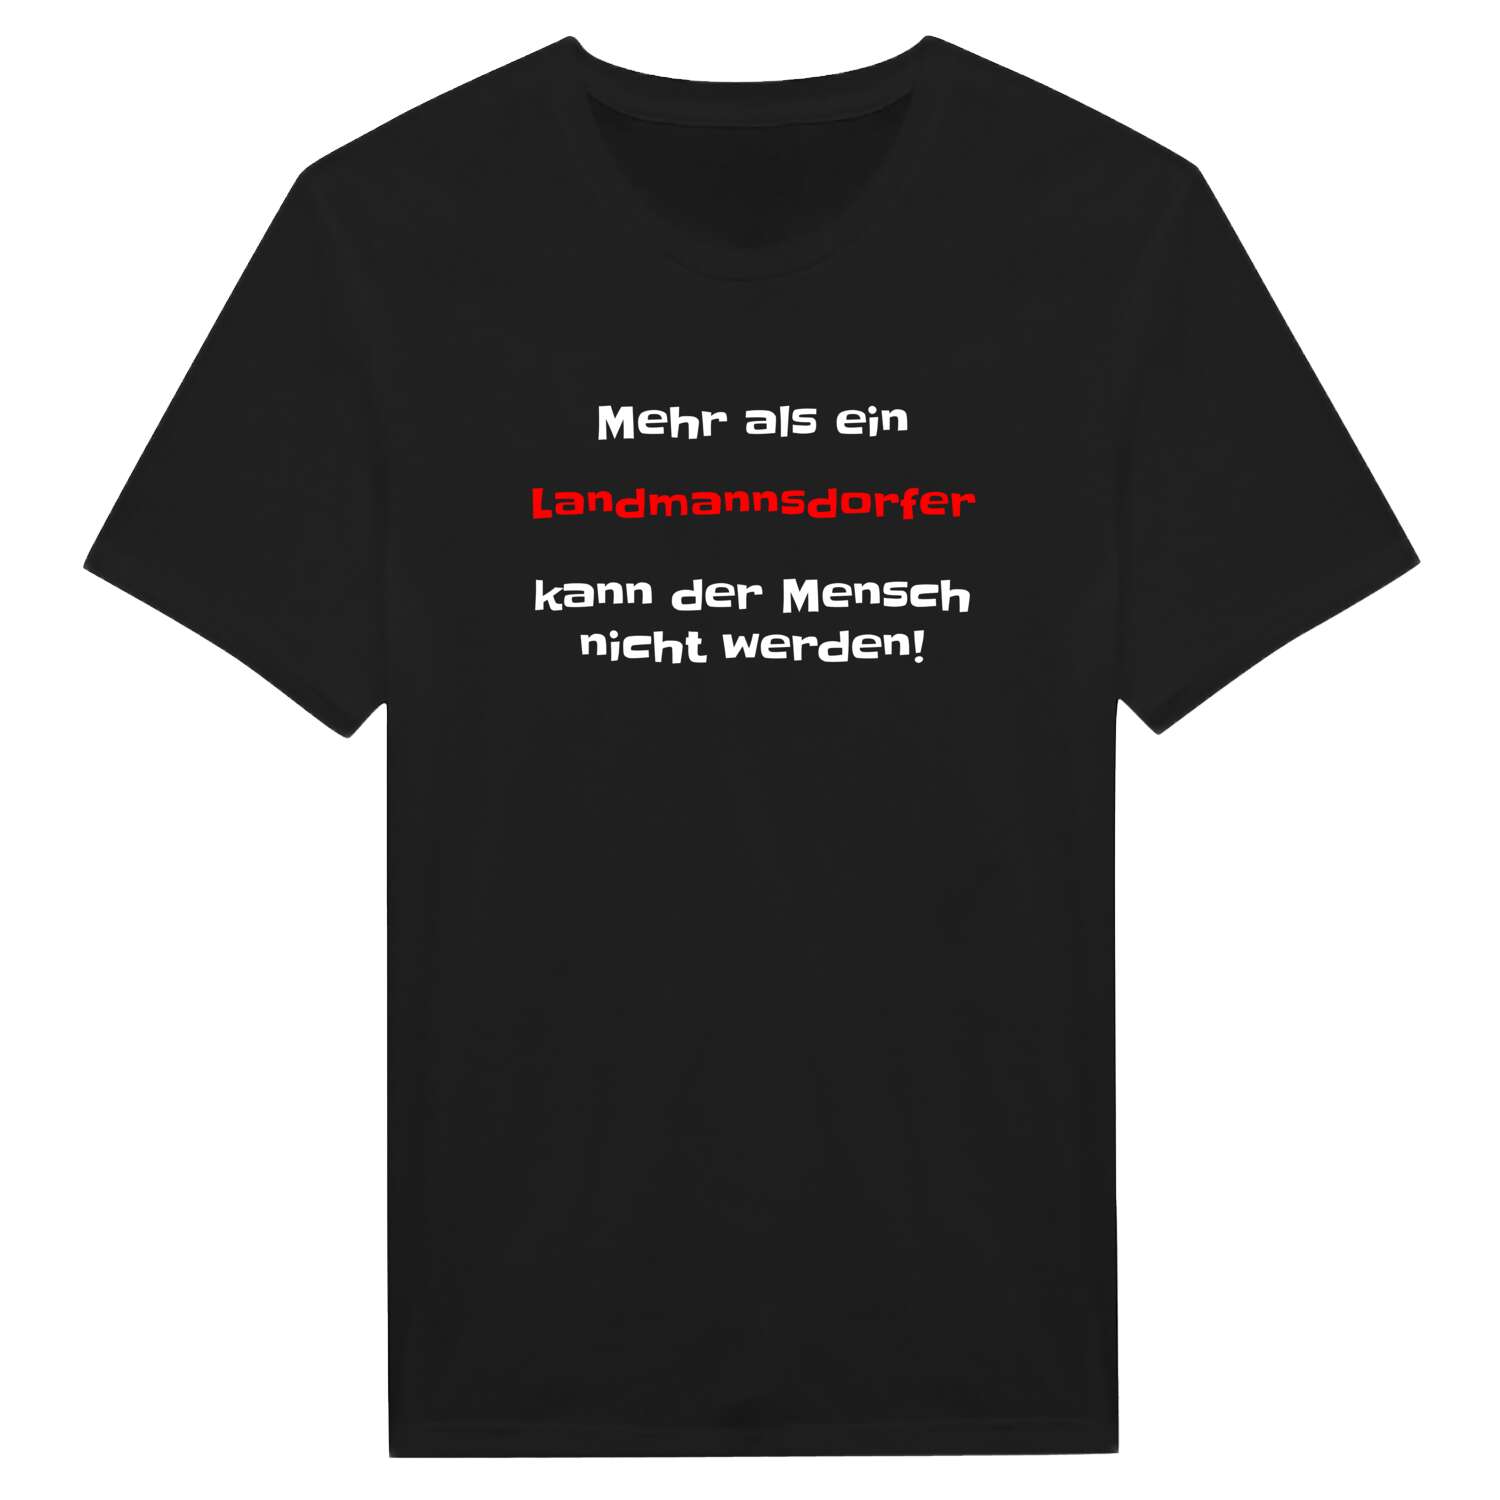 Landmannsdorf T-Shirt »Mehr als ein«